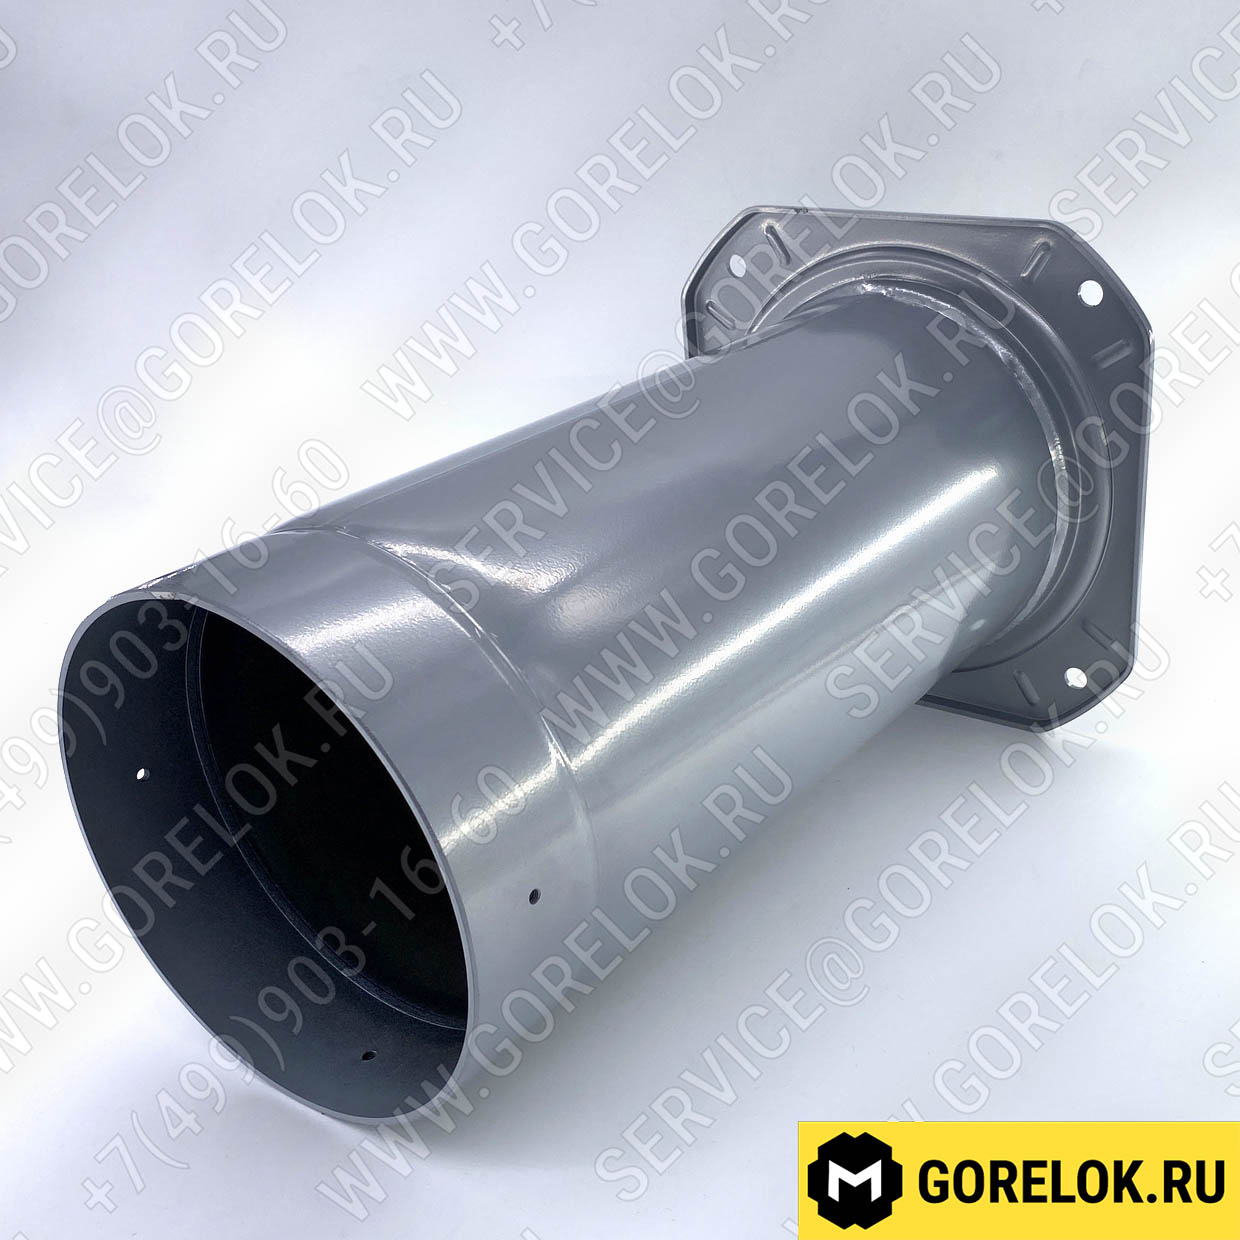 Жаровая труба для газовых горелок Ø176 X 400 мм : 0024020002-BT